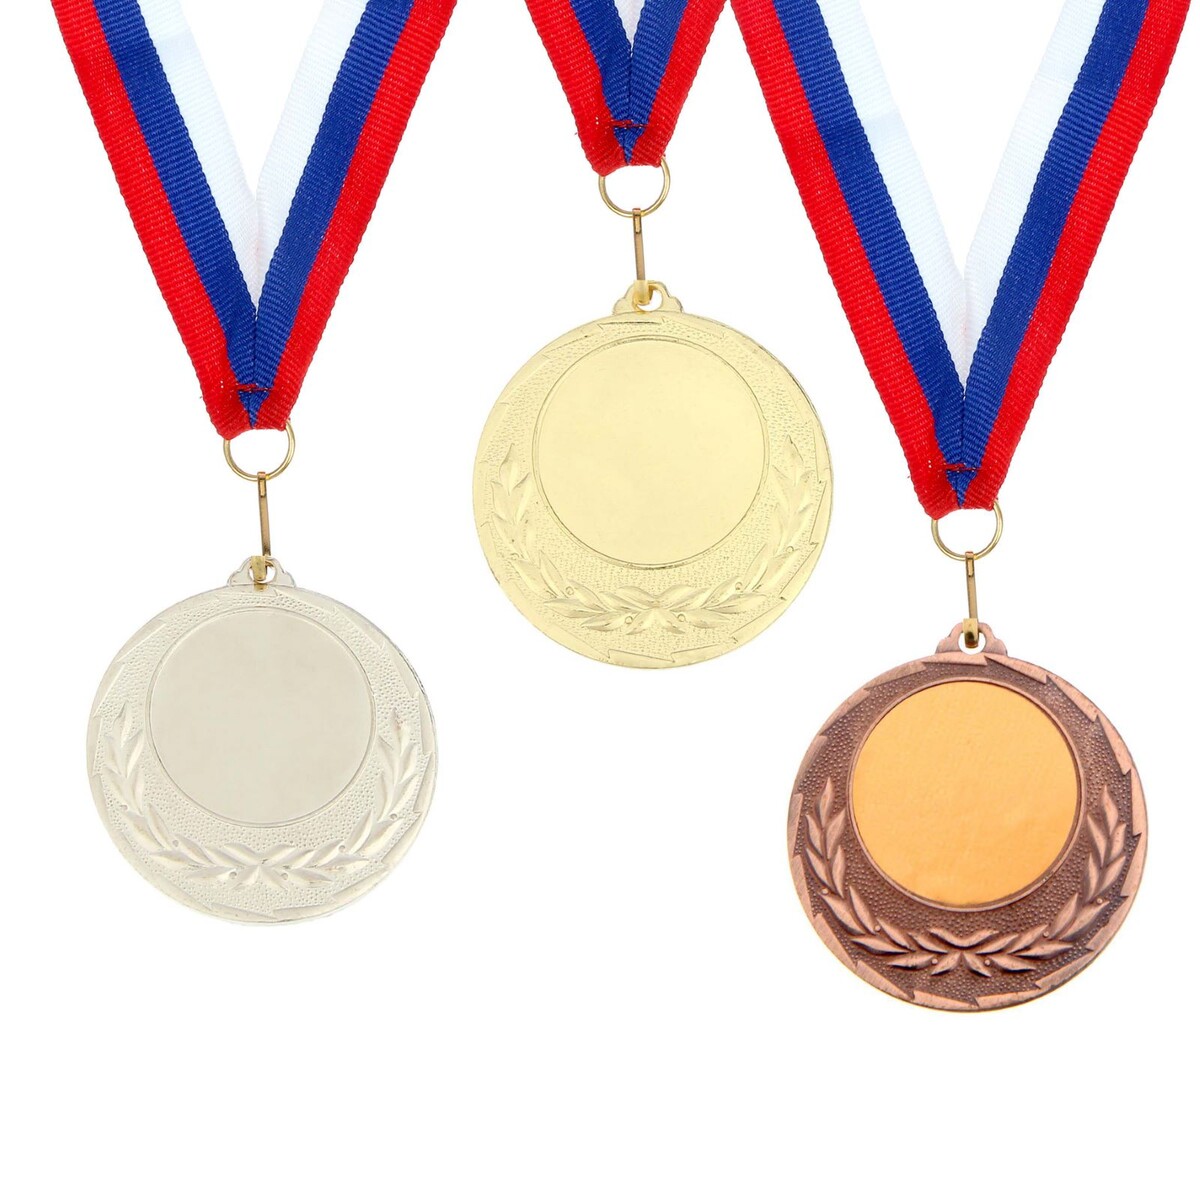 Медаль под нанесение 034 диам 4 см. цвет бронз. с лентой медаль под нанесение диам 4 см бронз без ленты